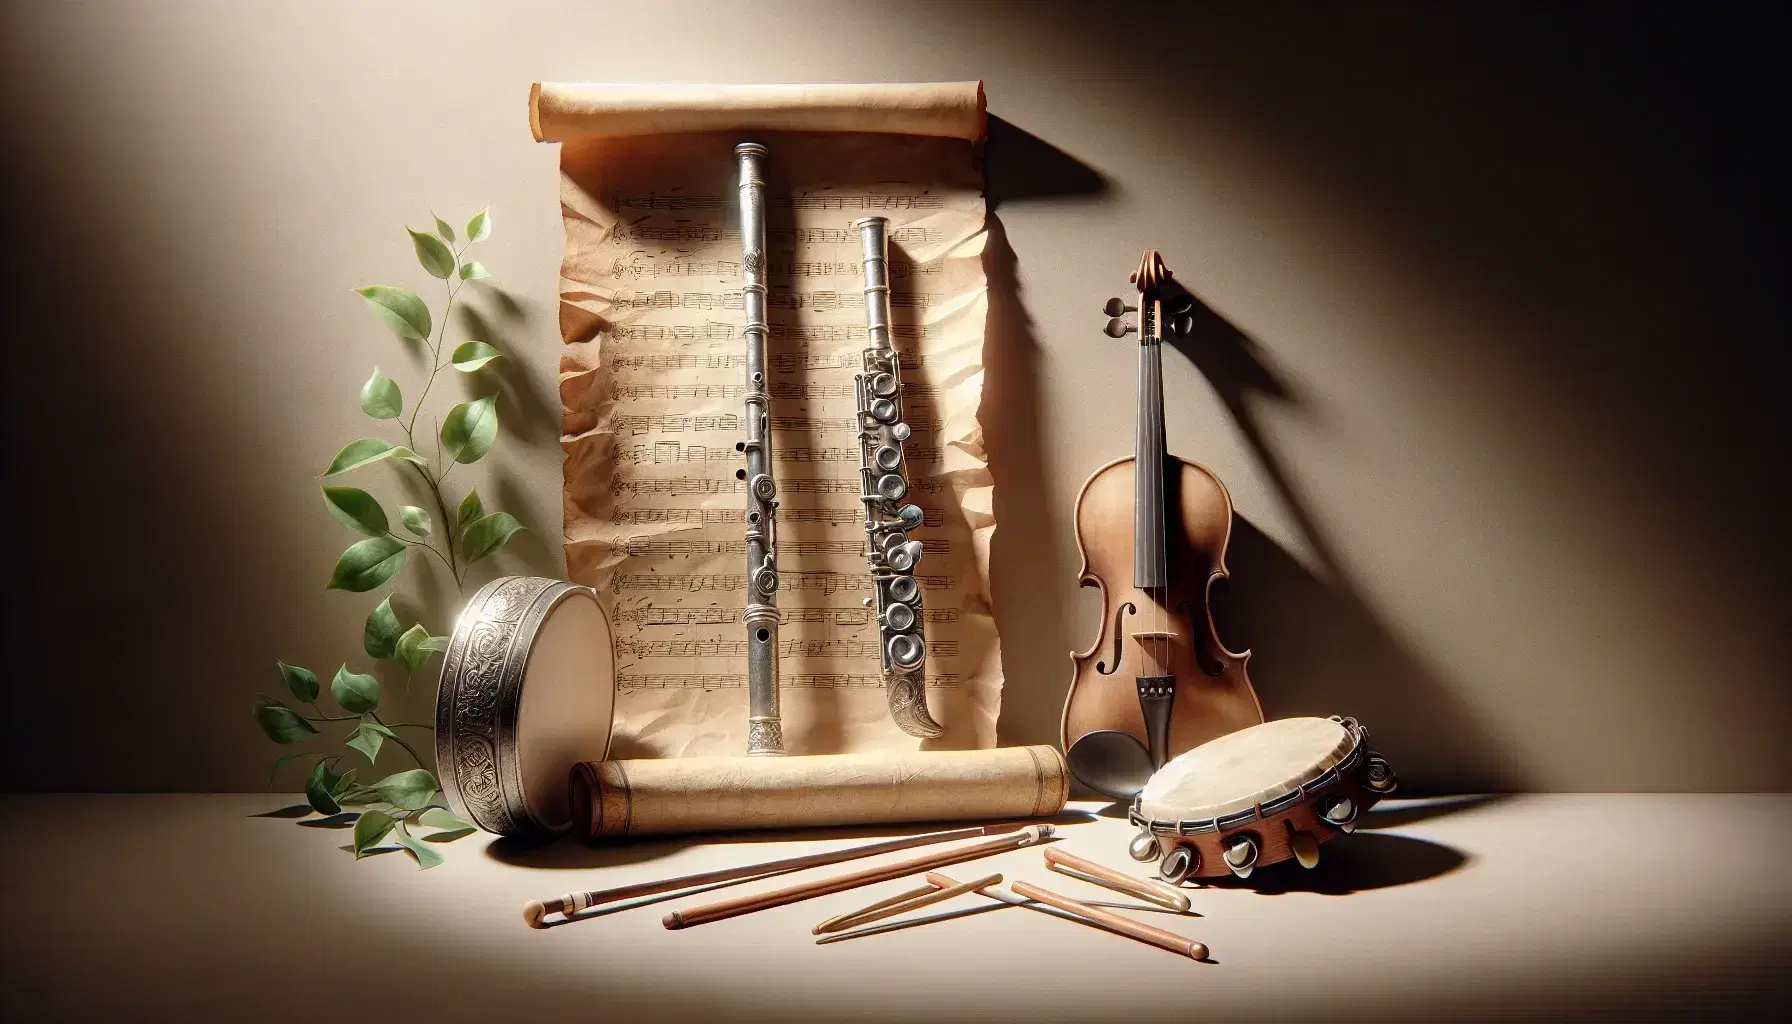 Collezione di strumenti musicali con flauto traverso, violino, archetto e tamburello su sfondo neutro e foglio di pergamena antico.